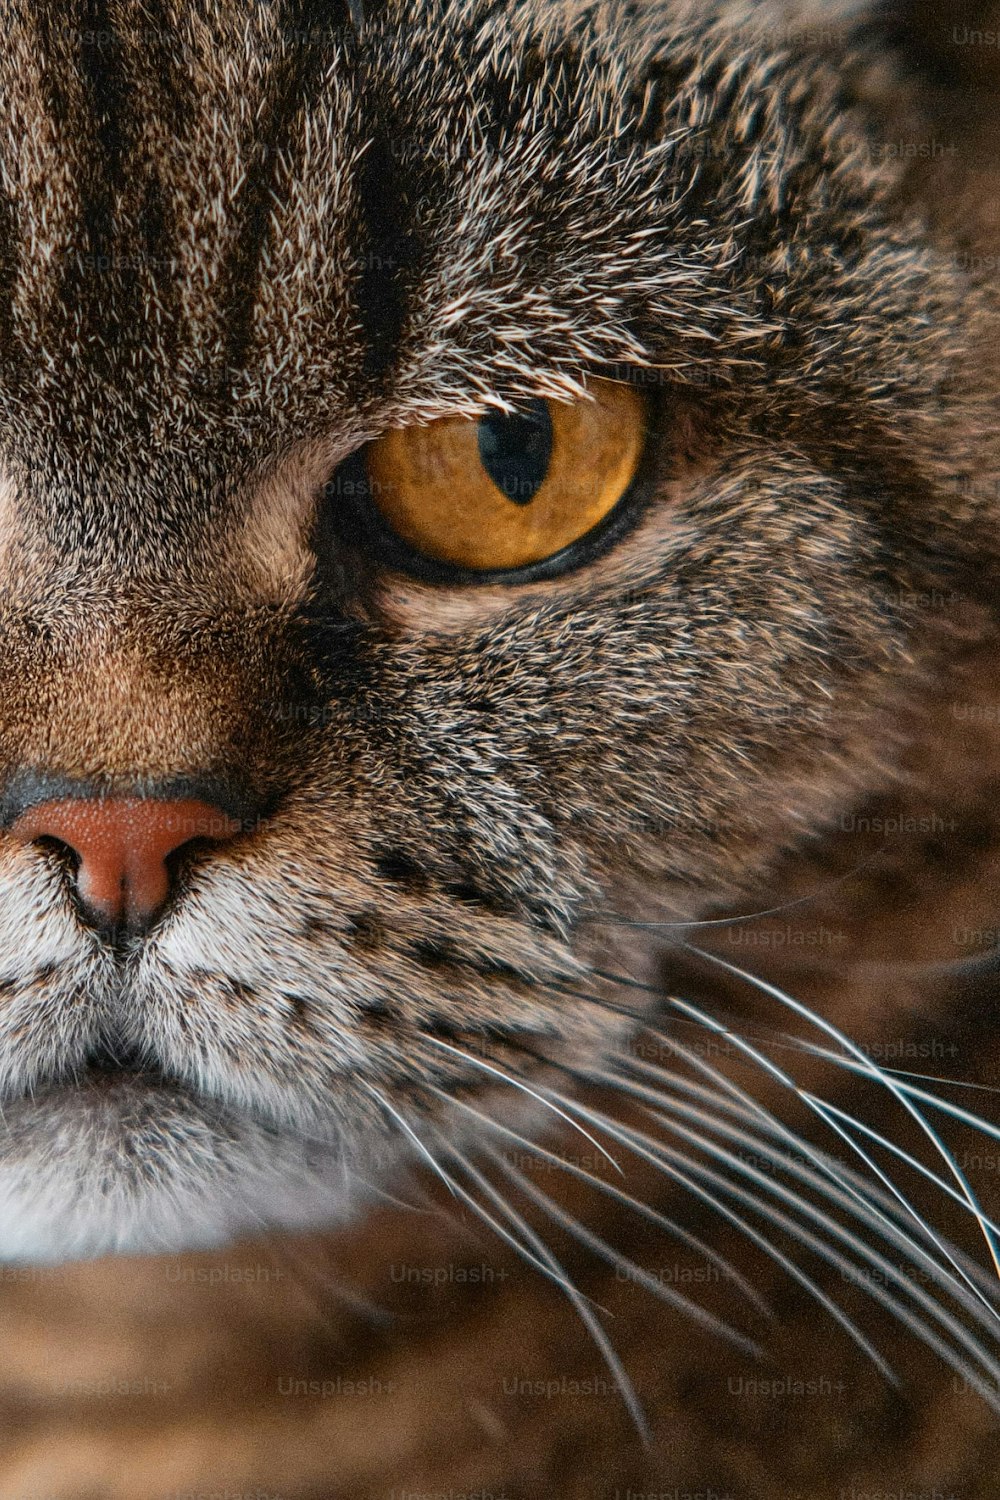 Un primer plano de la cara de un gato con ojos amarillos